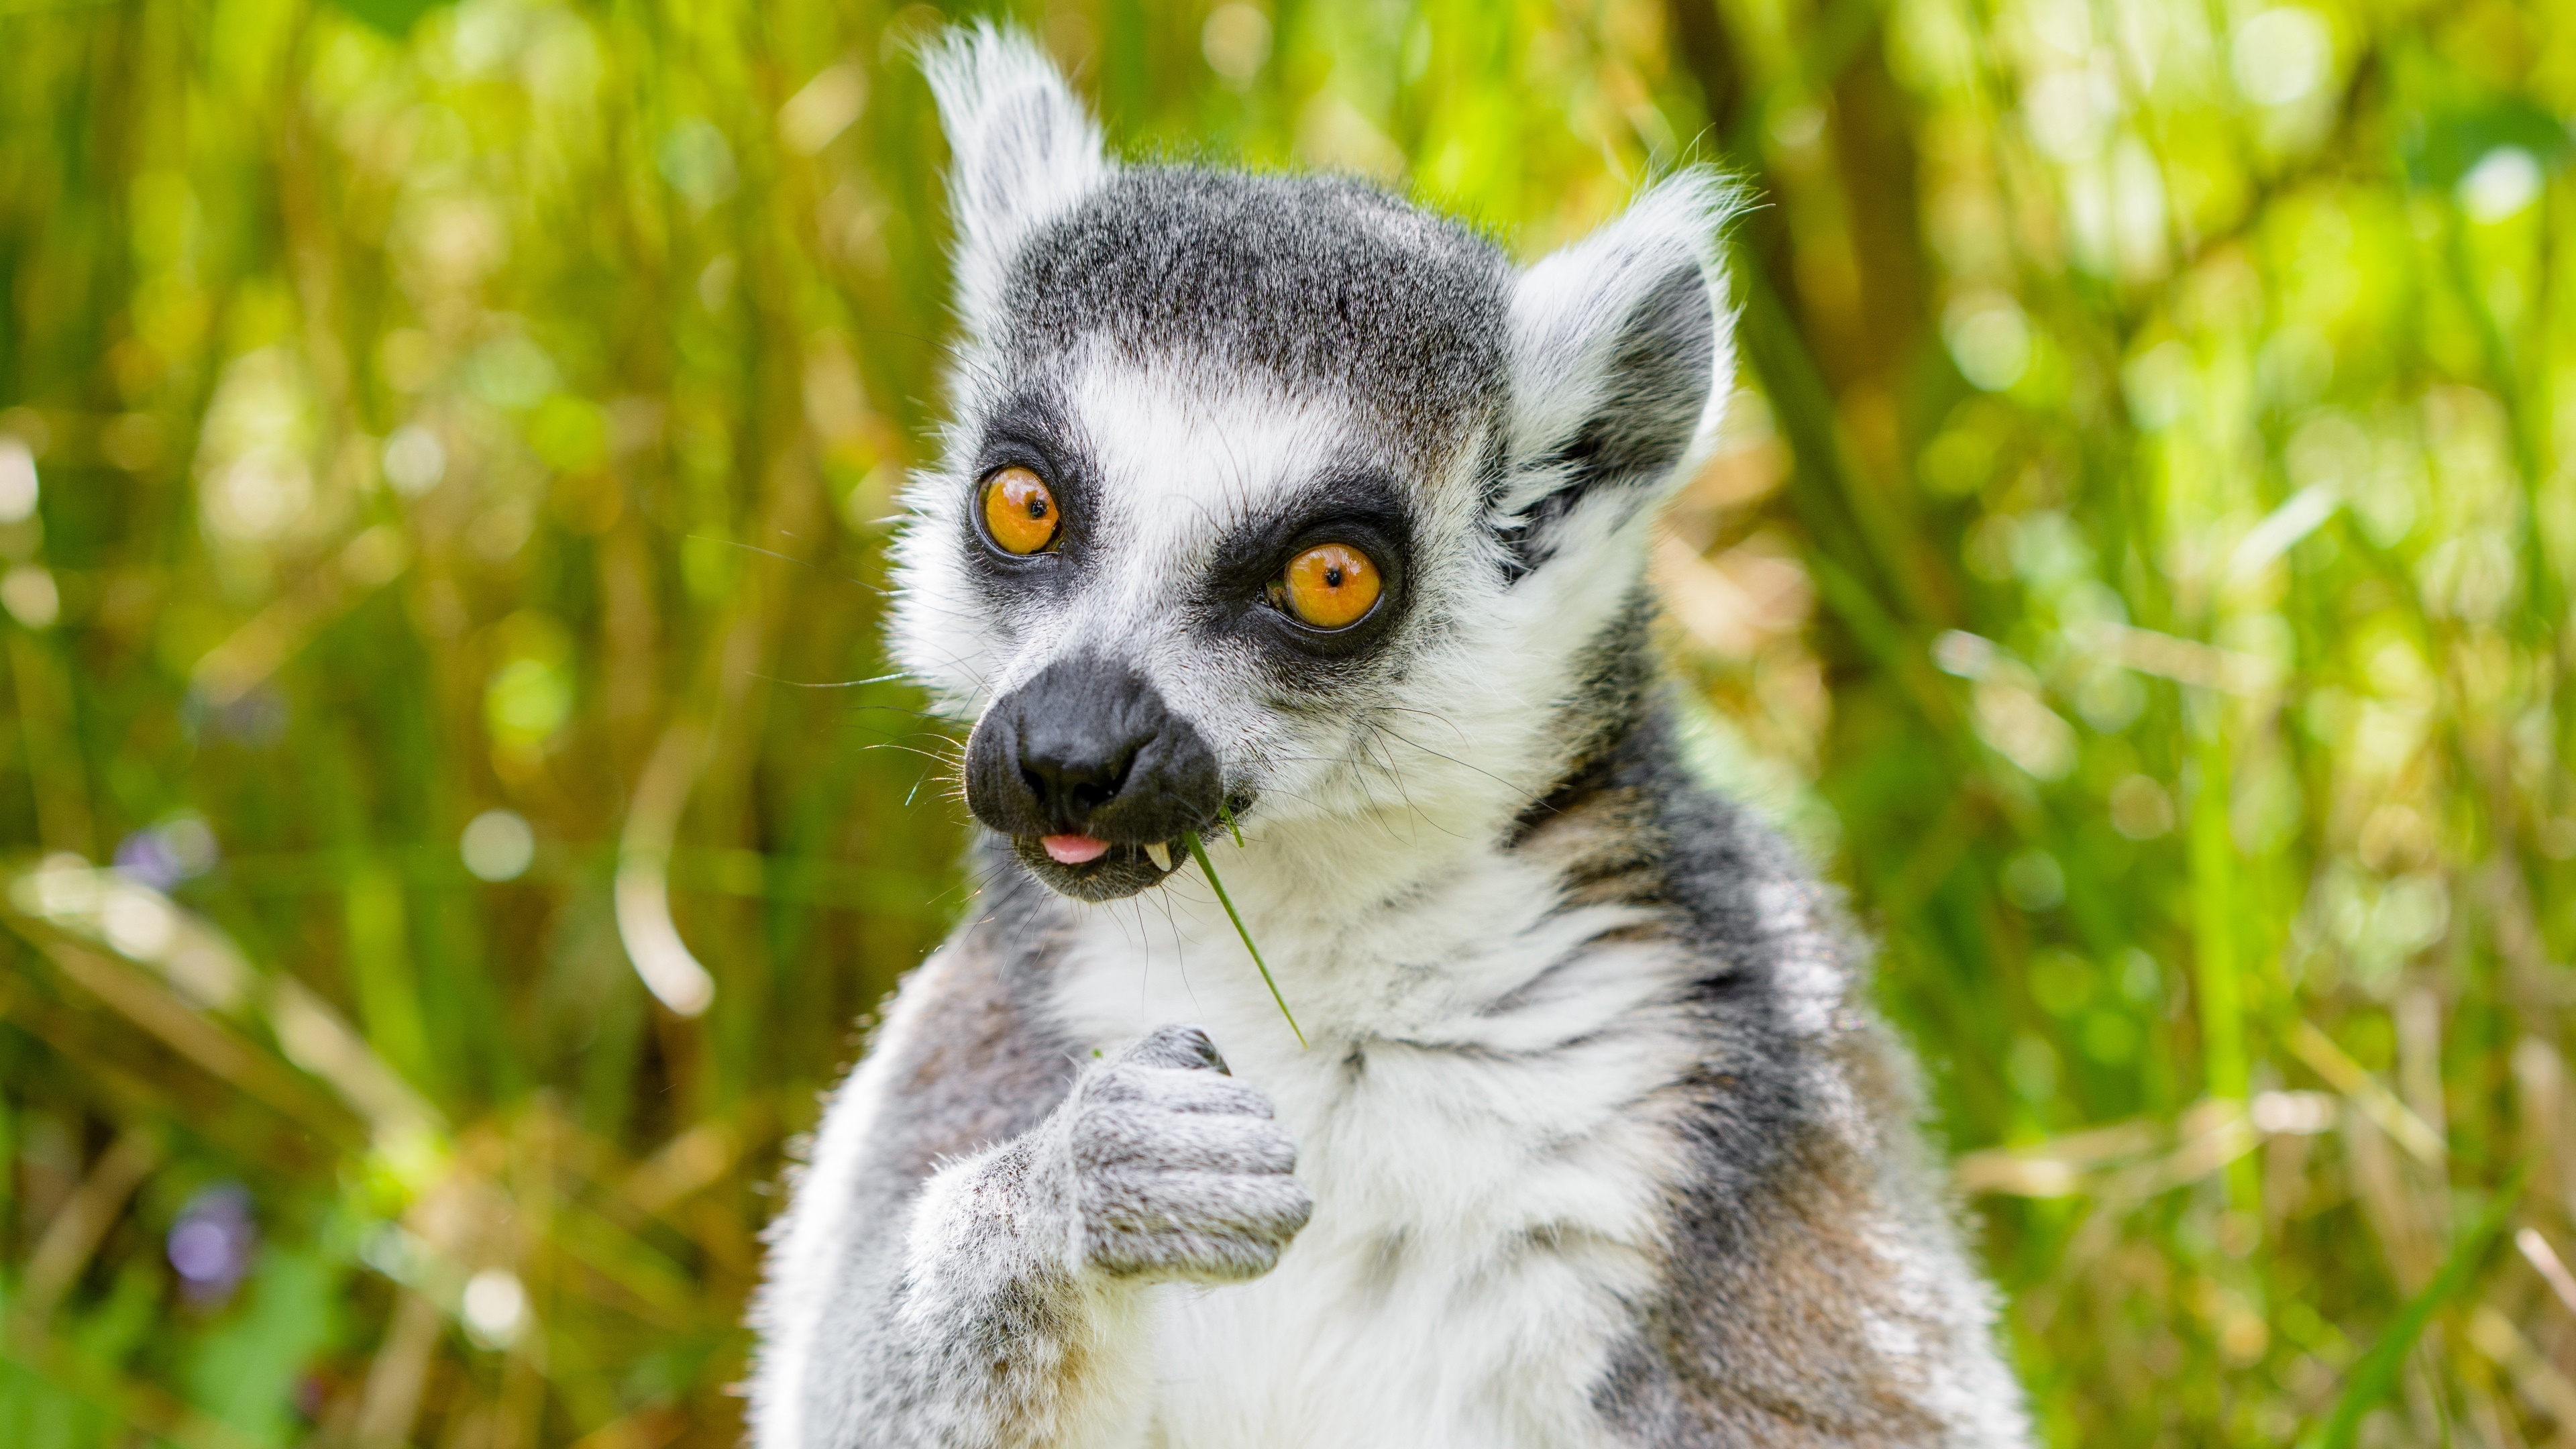 Lemur 4K Ultra HD, Stunning visuals, Detailed imagery, High-resolution, 3840x2160 4K Desktop